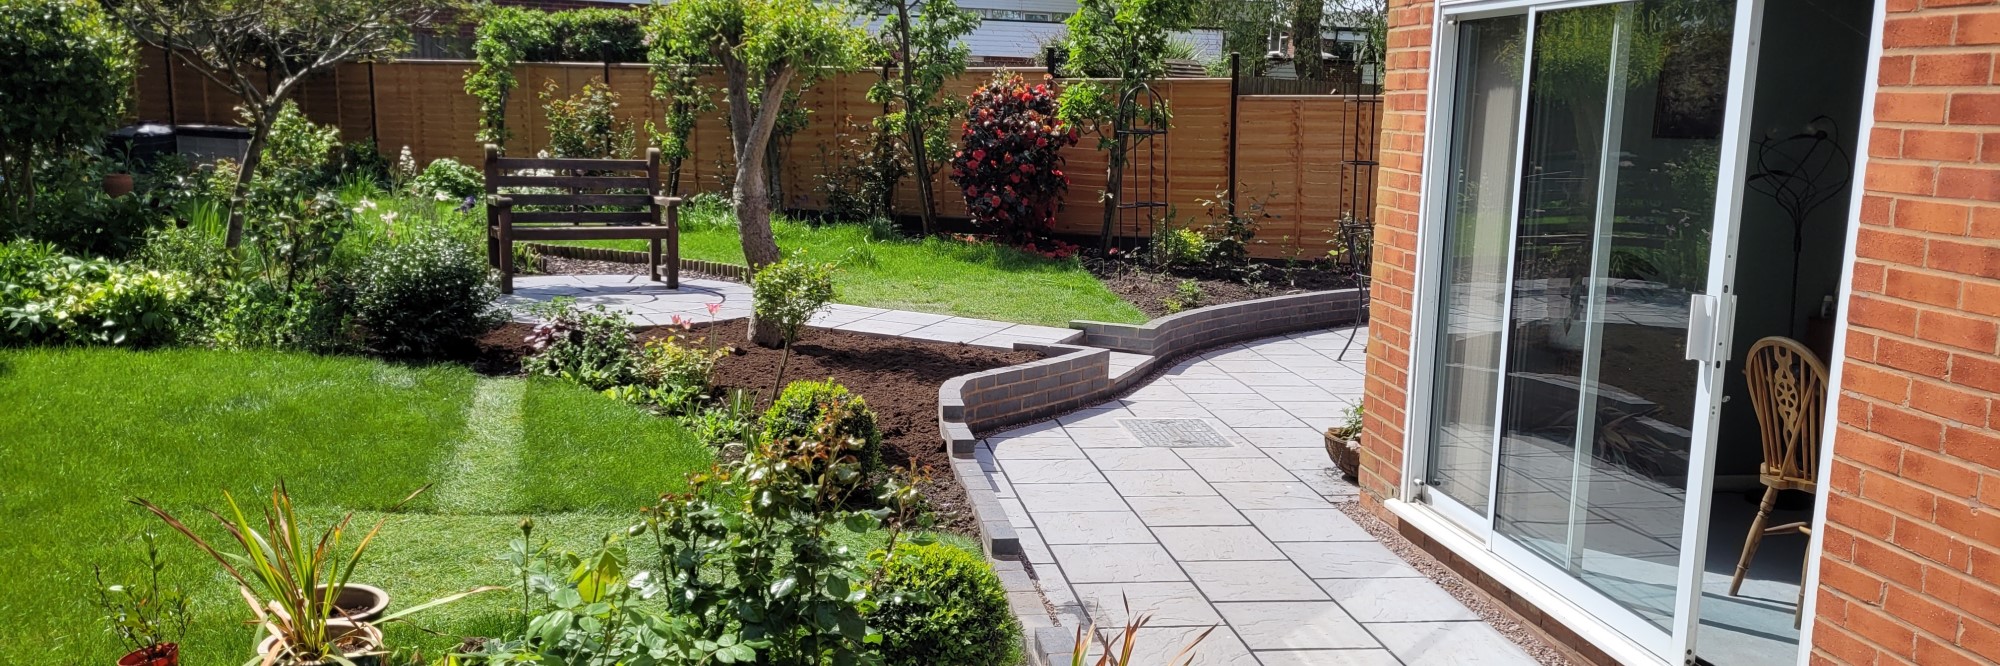 Garden patios paths DG Services Landscapers Garden Services bromsgrove Droitwich